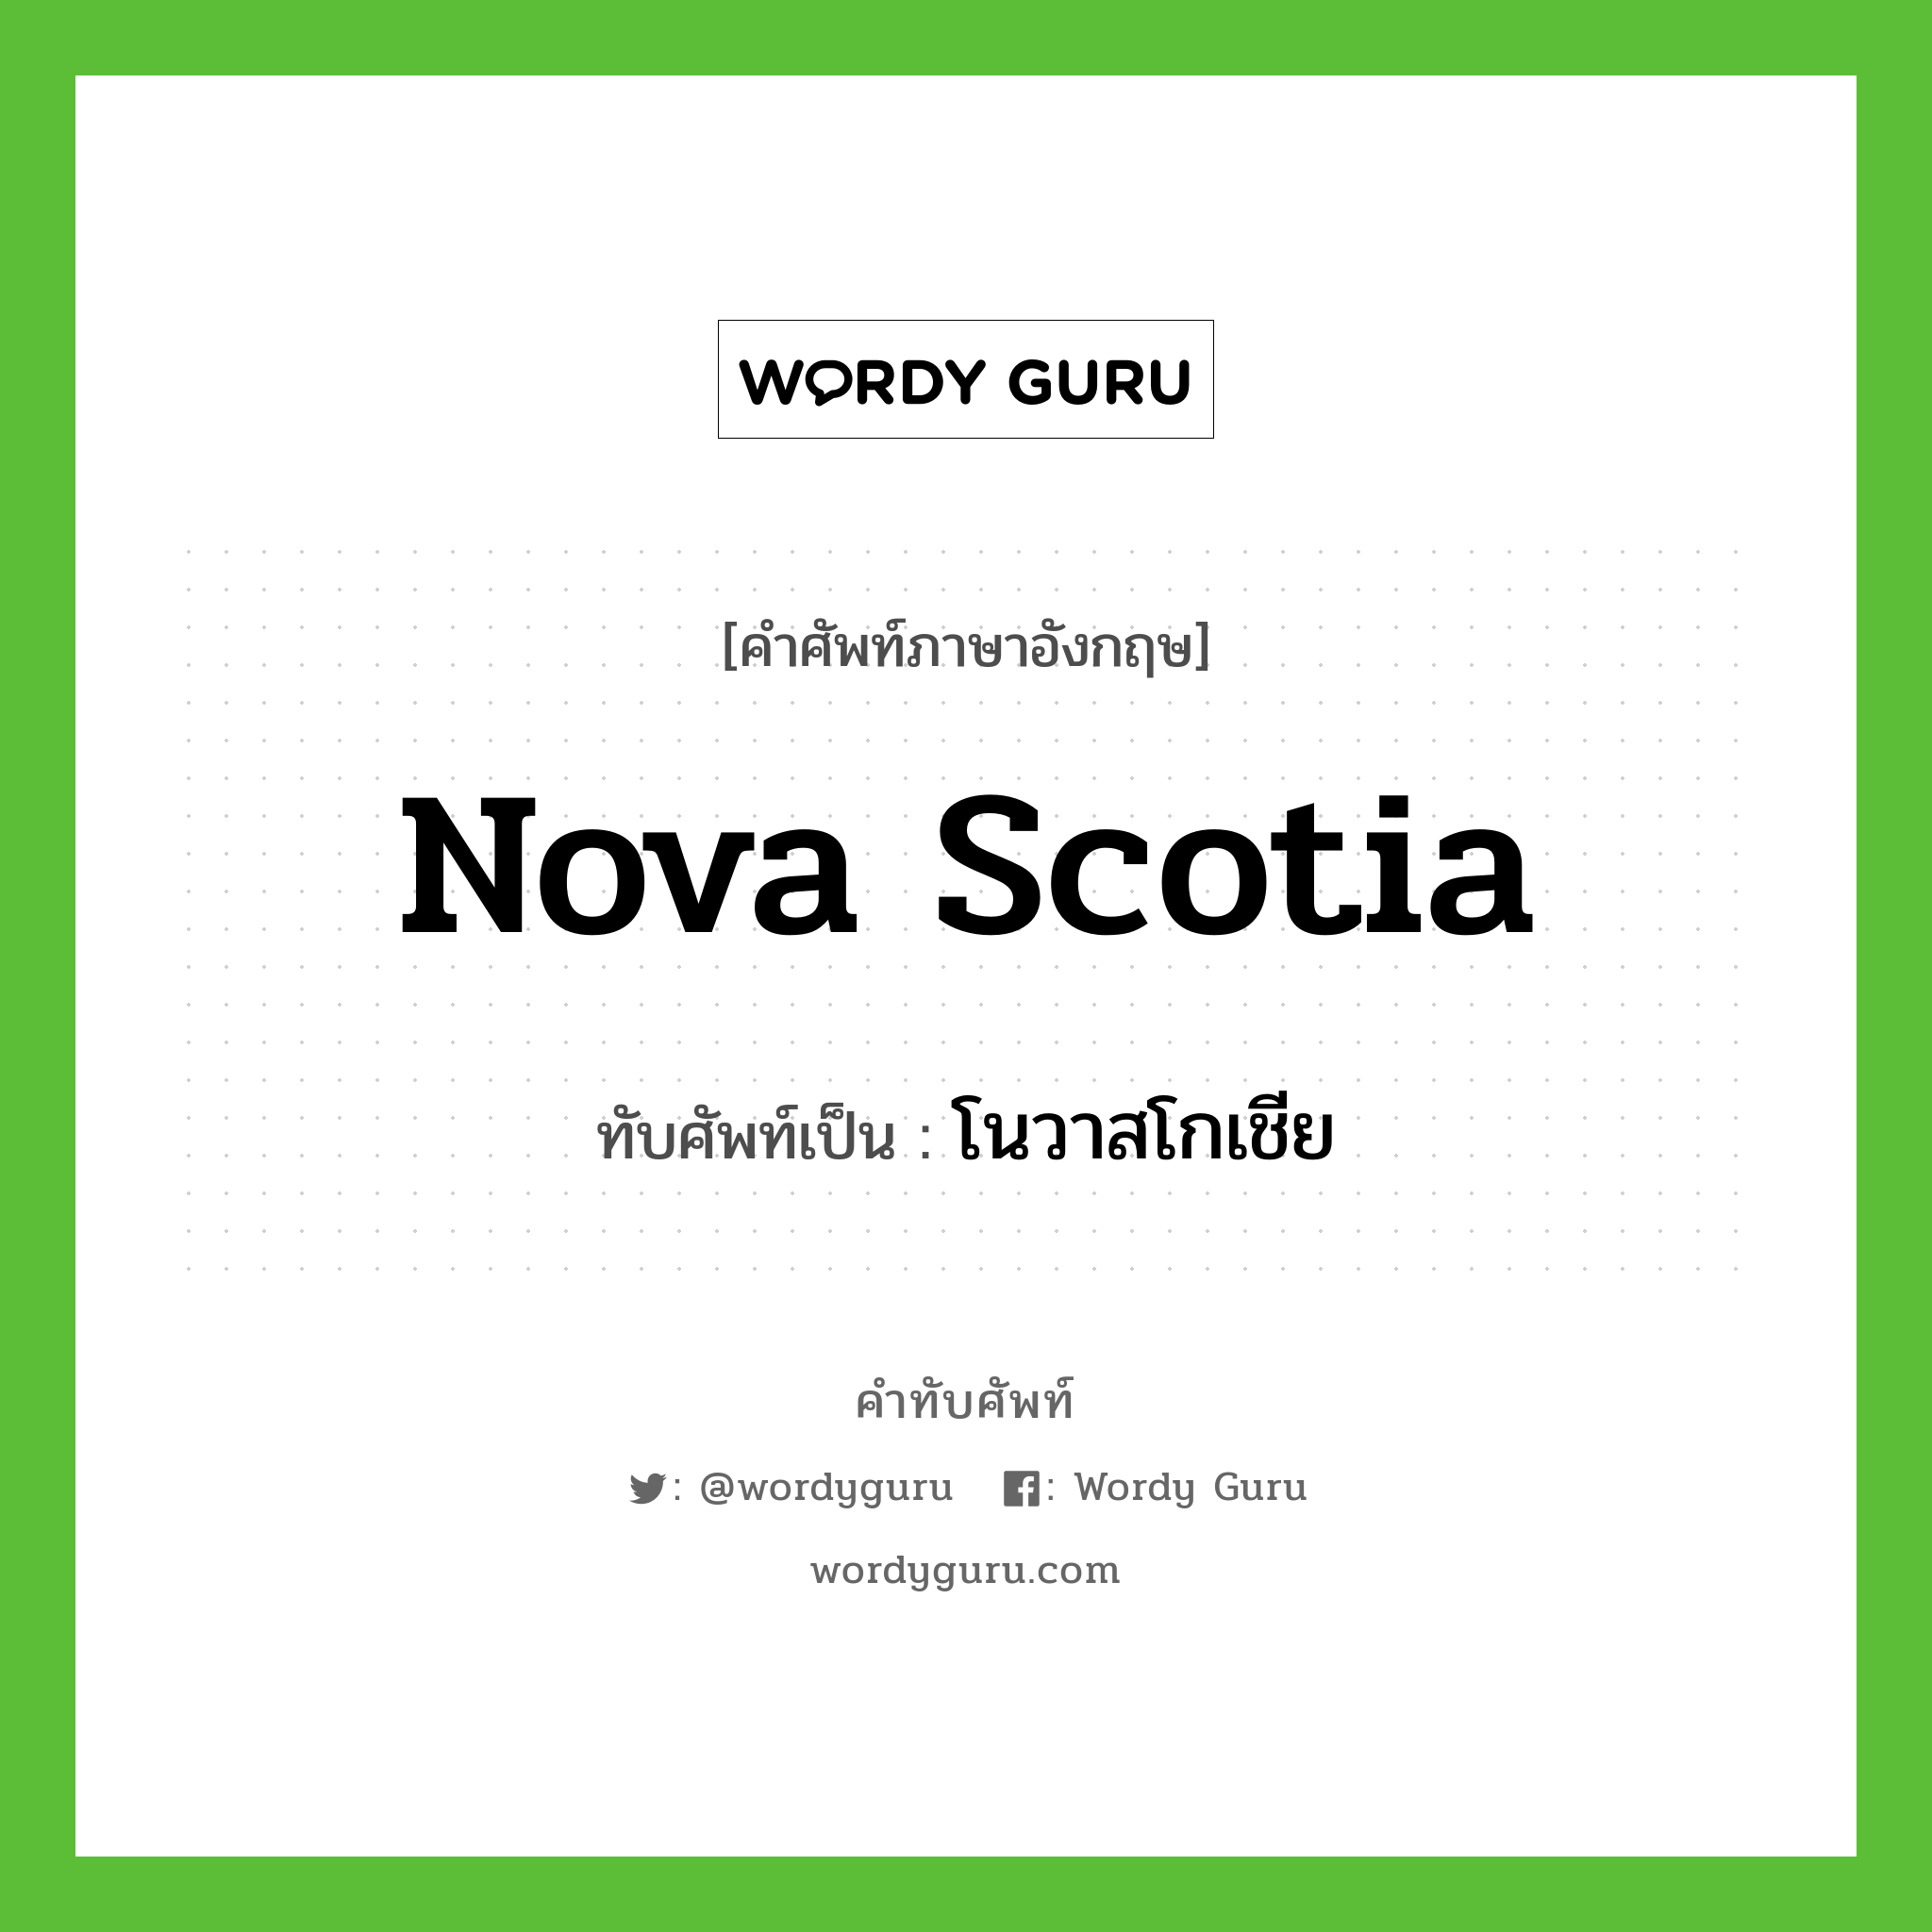 โนวาสโกเชีย เขียนอย่างไร?, คำศัพท์ภาษาอังกฤษ โนวาสโกเชีย ทับศัพท์เป็น Nova Scotia